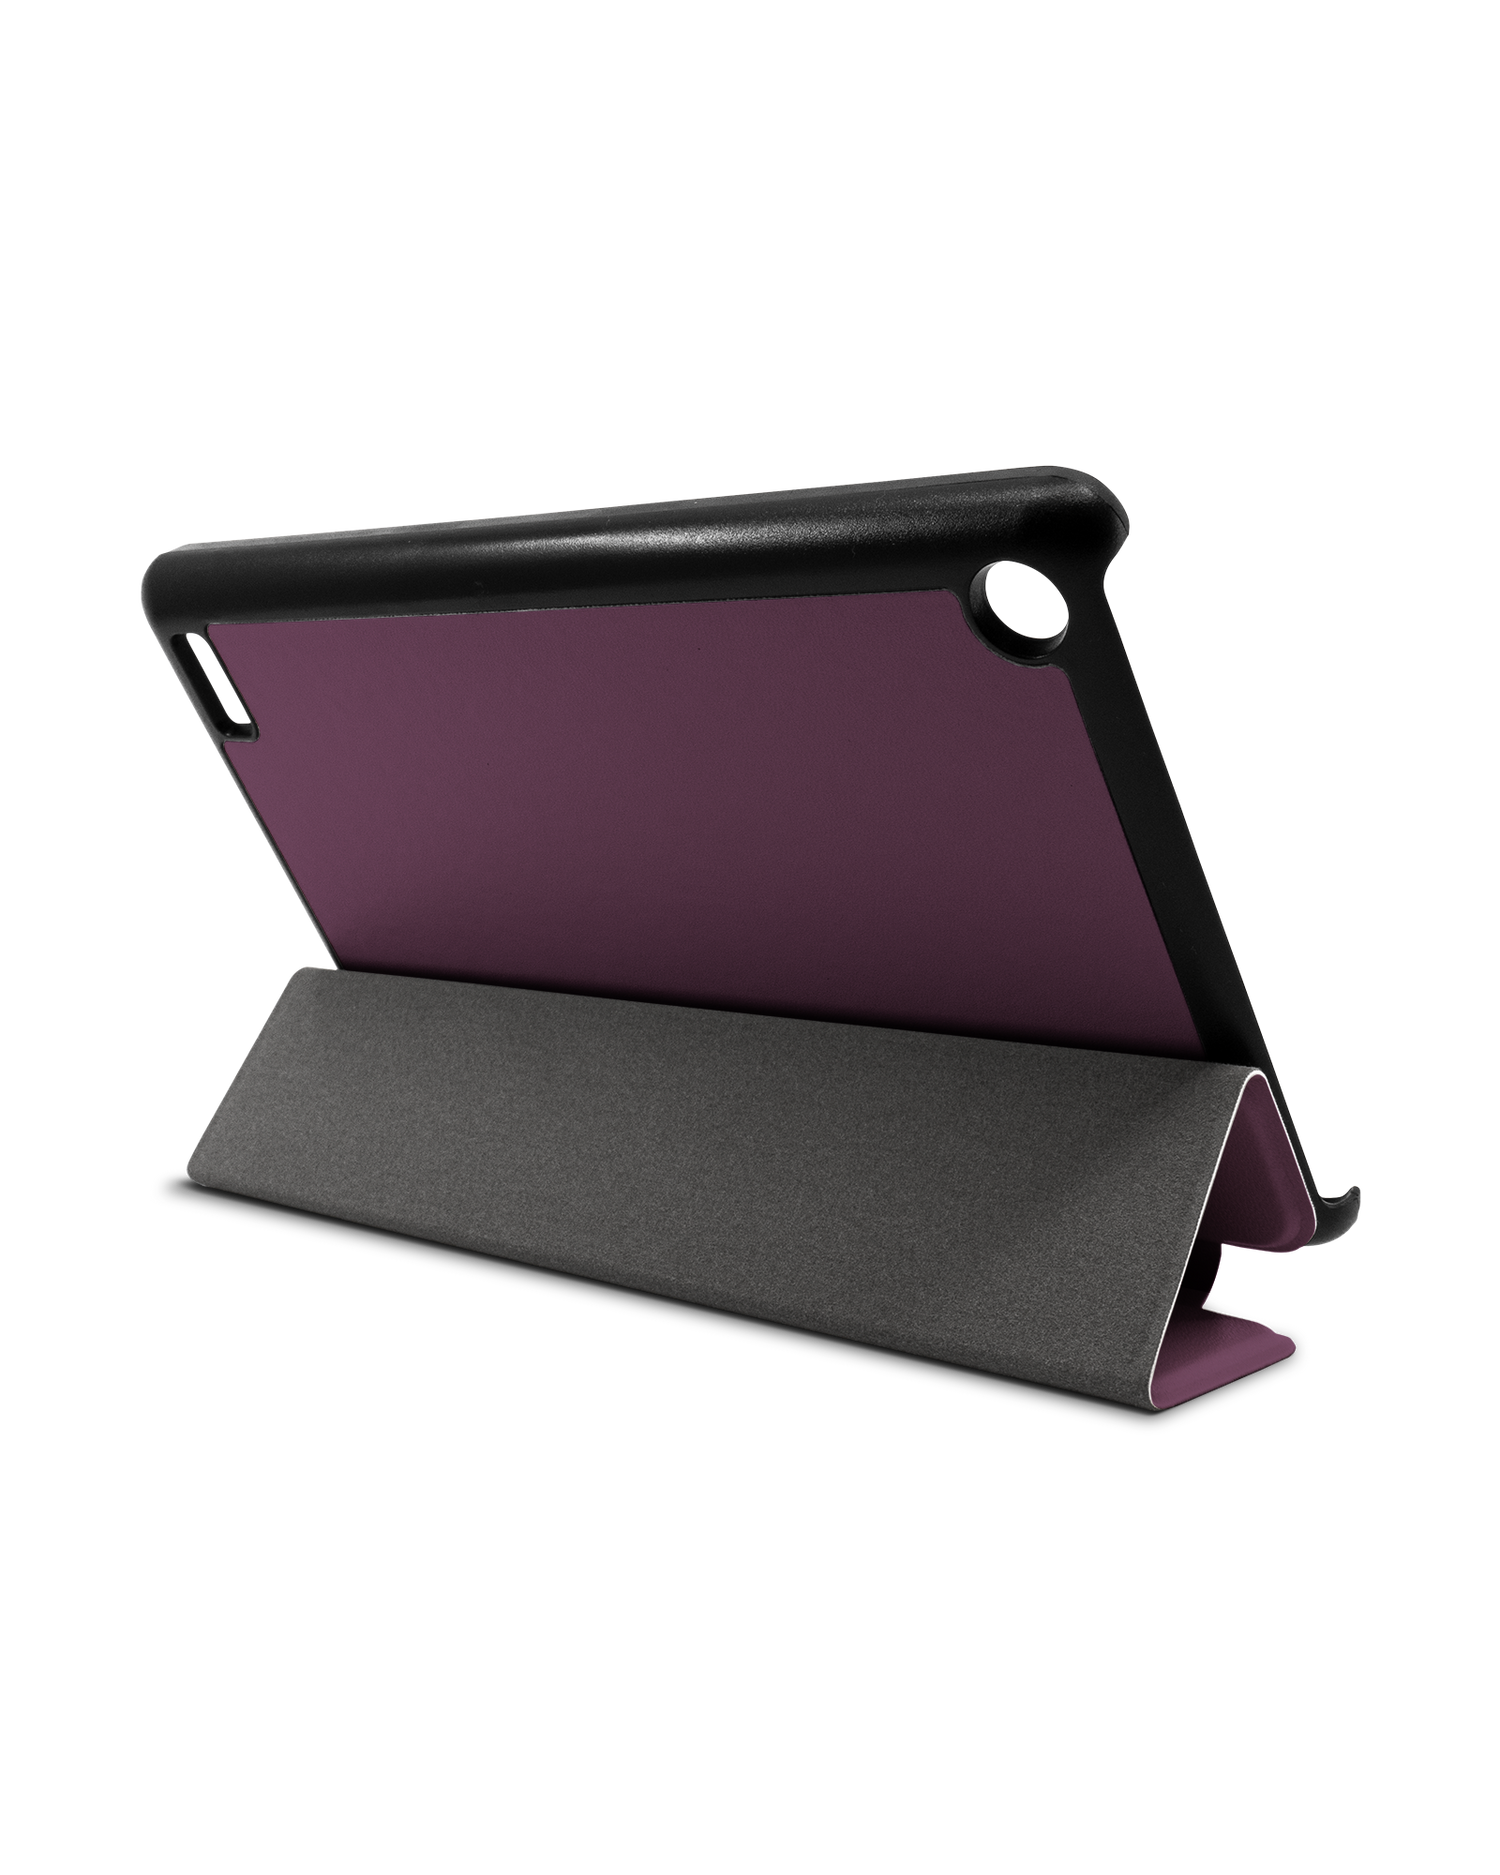 PLUM Tablet Smart Case für Amazon Fire 7: Aufgestellt im Querformat